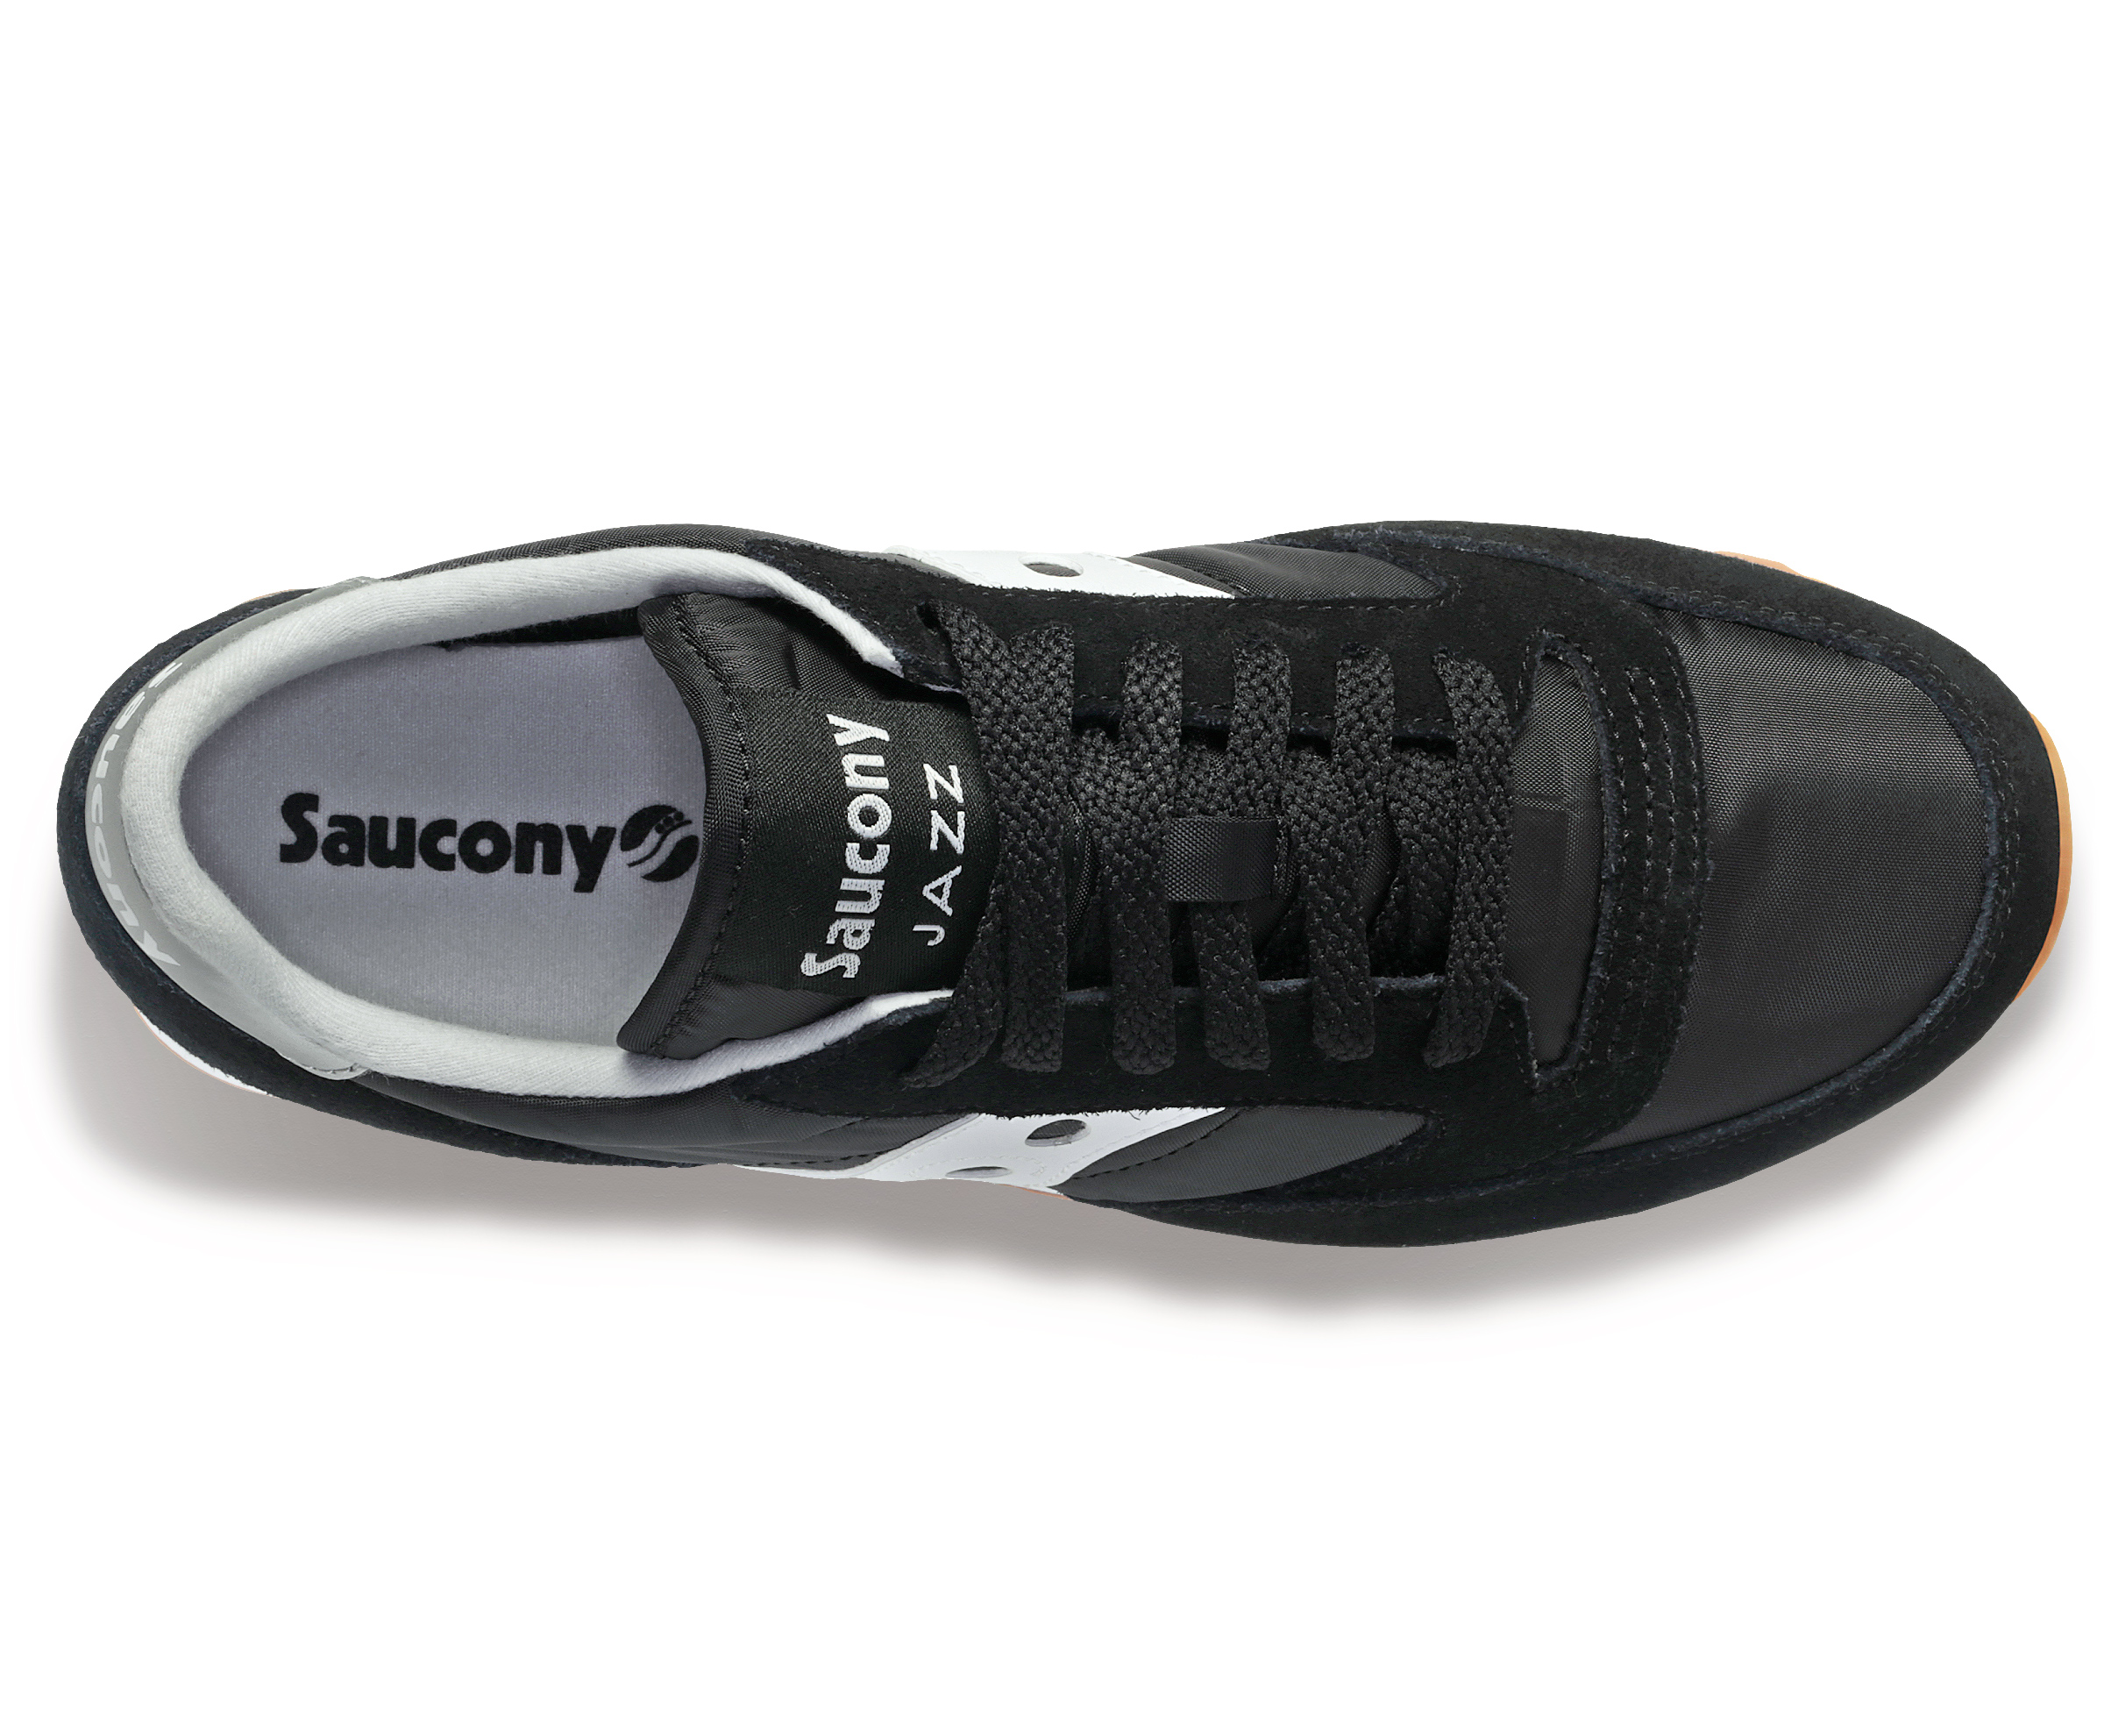 dámská obuv saucony S1044-644 JAZZ ORIGINAL black/white